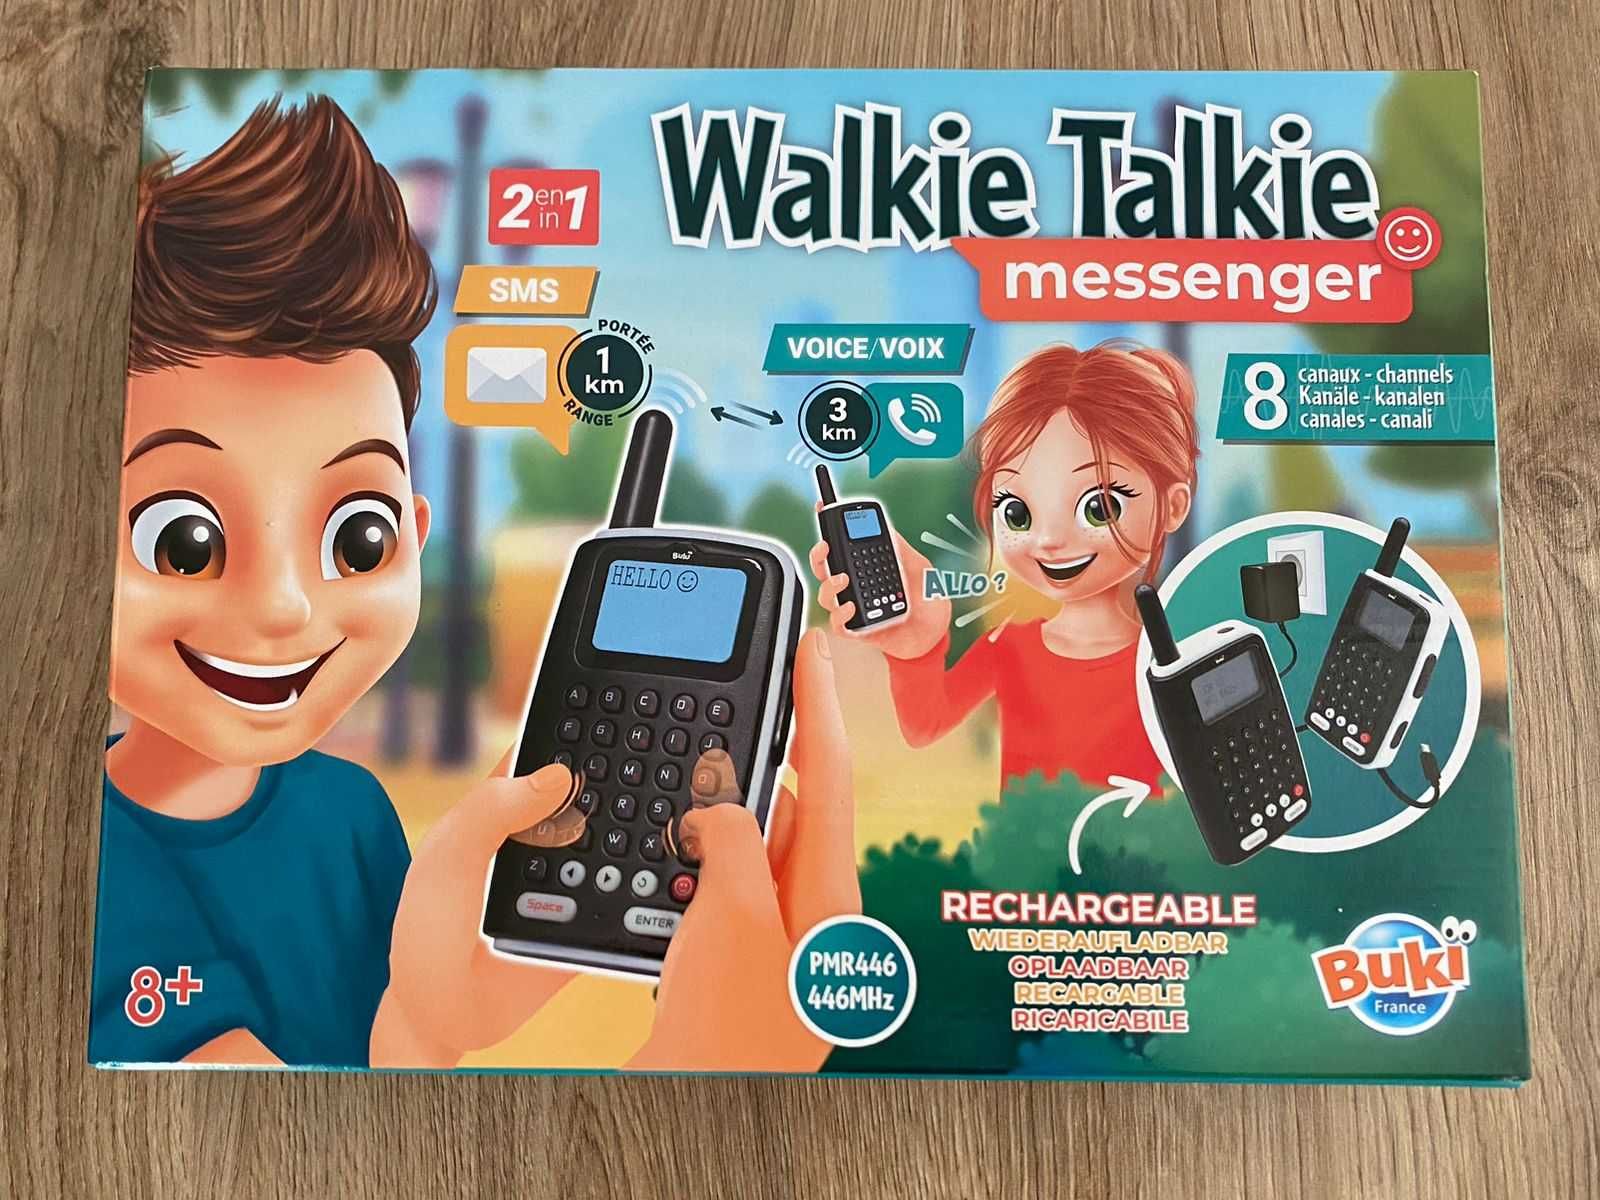 Walkie-Talkie messenger Buki TW04